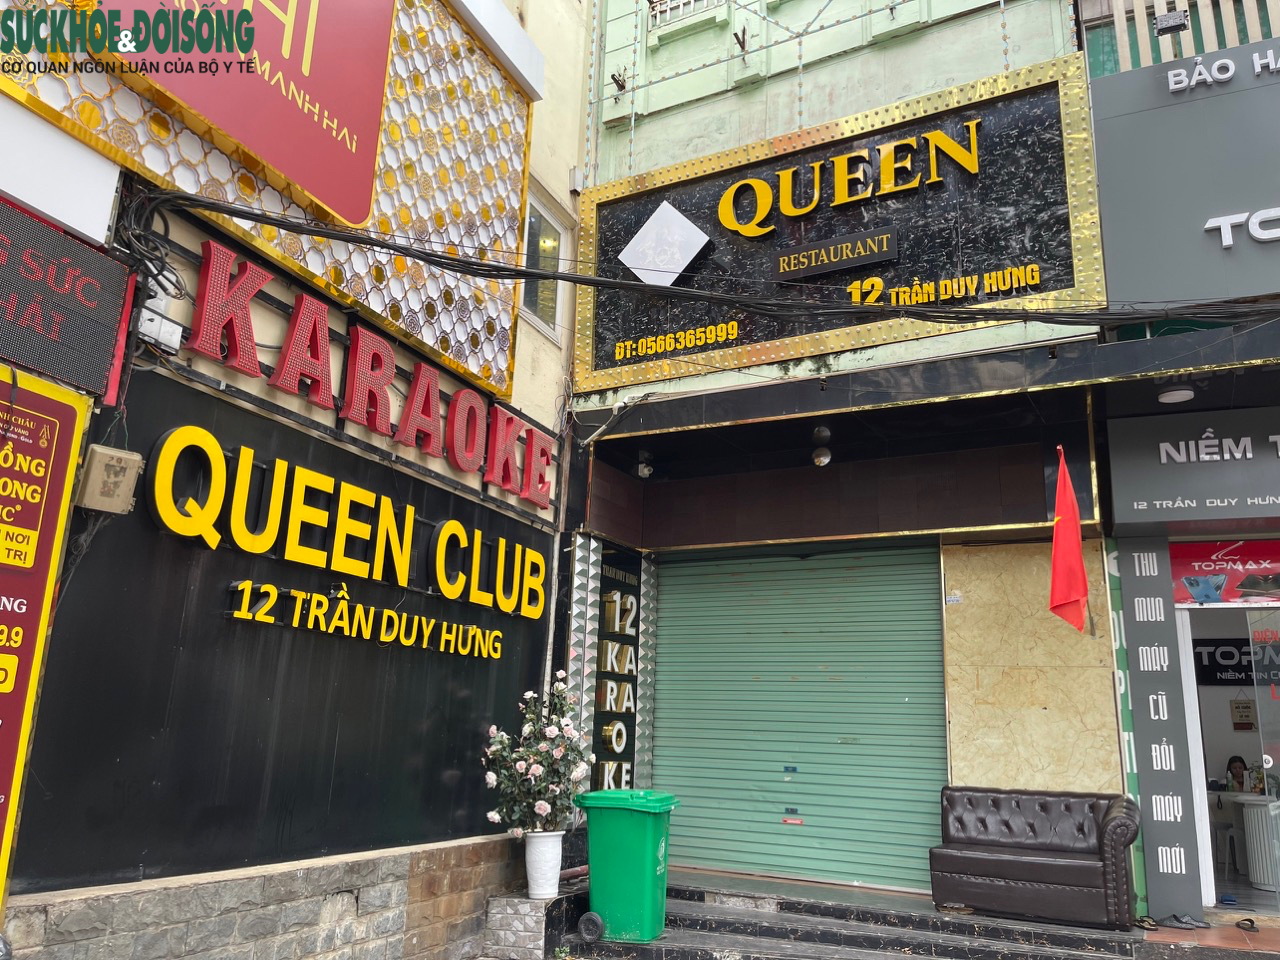 Hàng loạt quán karaoke ở Hà Nội bị lập hàng rào, đóng cửa - Ảnh 11.